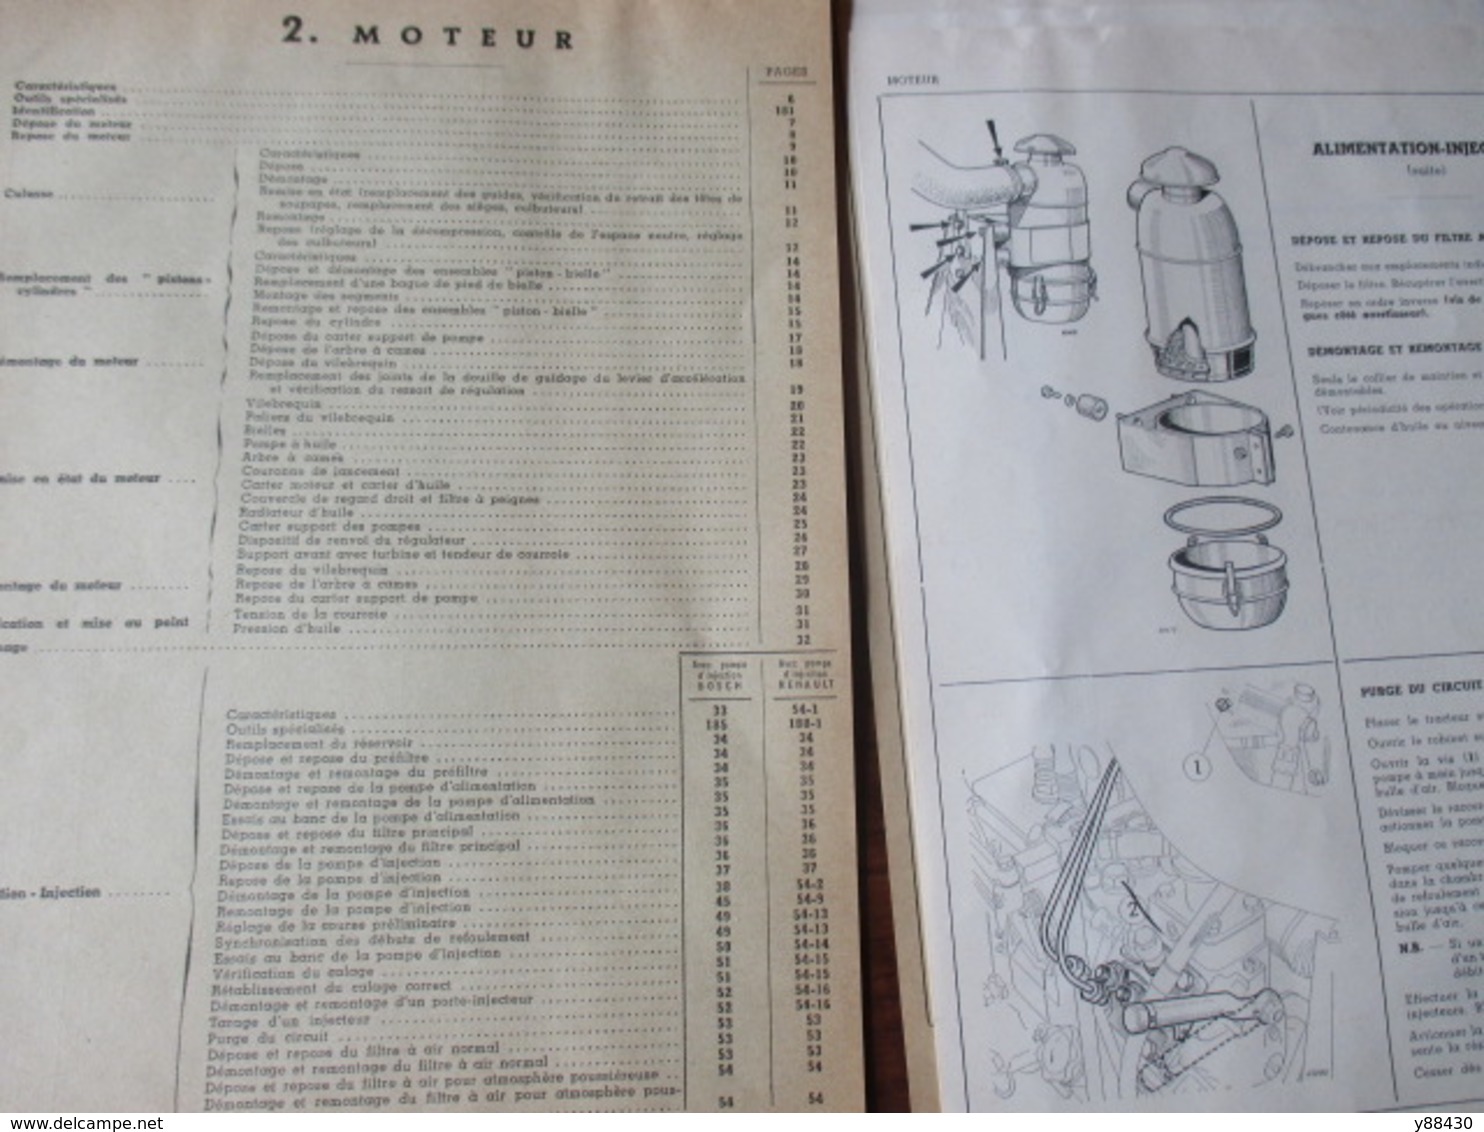 RENAULT - TRACTEURS AGRICOLES - D.22 type R.7052  &  D.35 type R.7050 - Mise à jour de avril 1961 - 14 pages - 10 photos